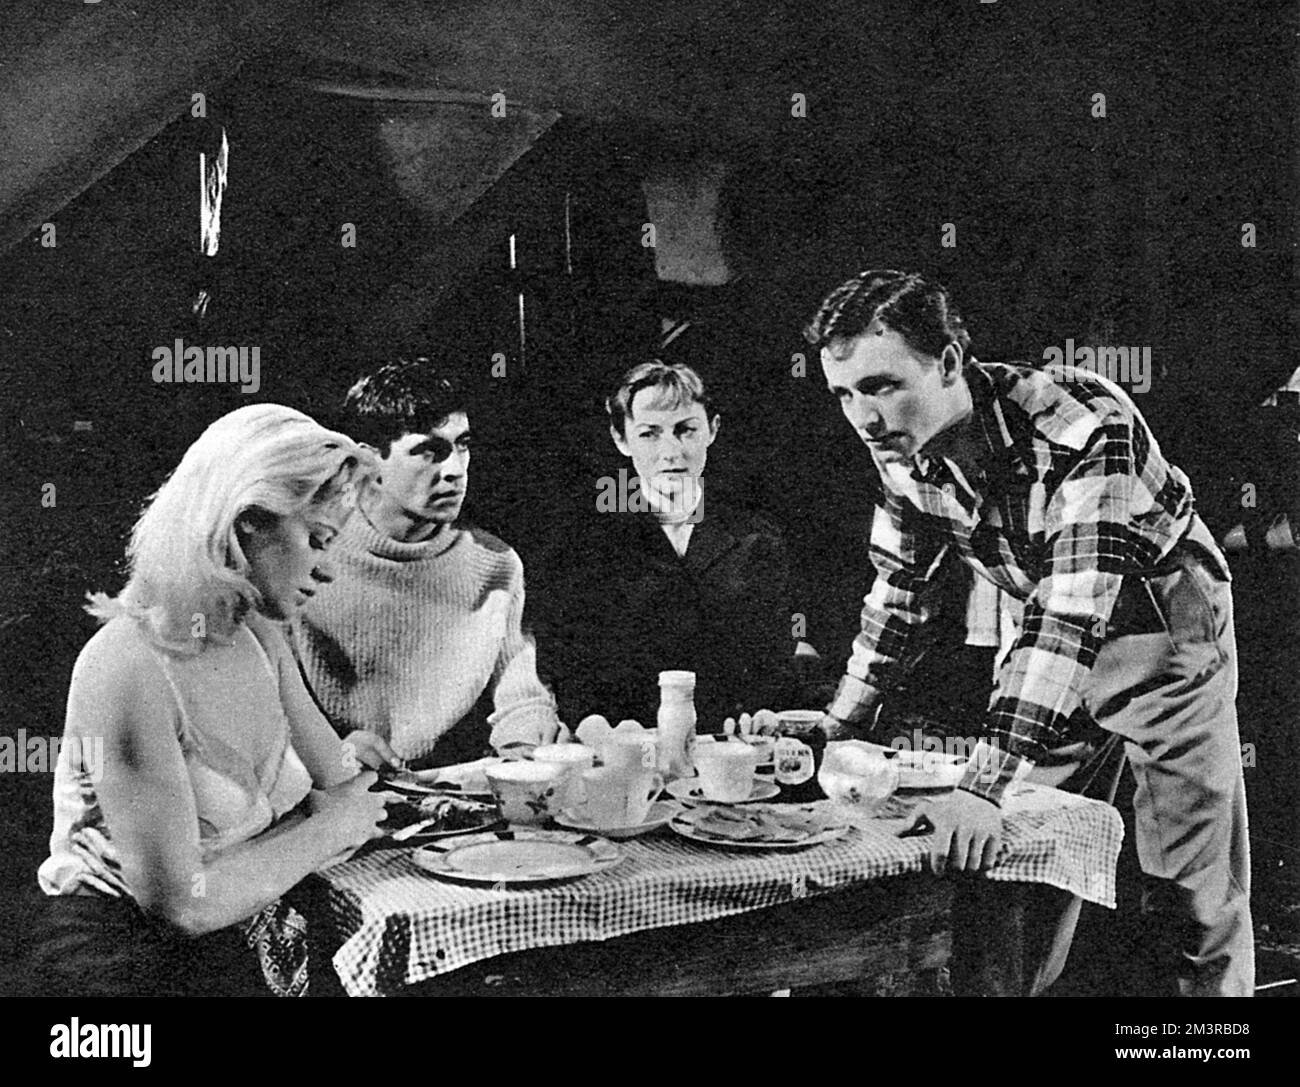 Una scena del gioco "Look Back in Anger", con Alison Porter, Cliff Lewis, Helena Charles e Jimmy Porter. Data: 1956 Foto Stock